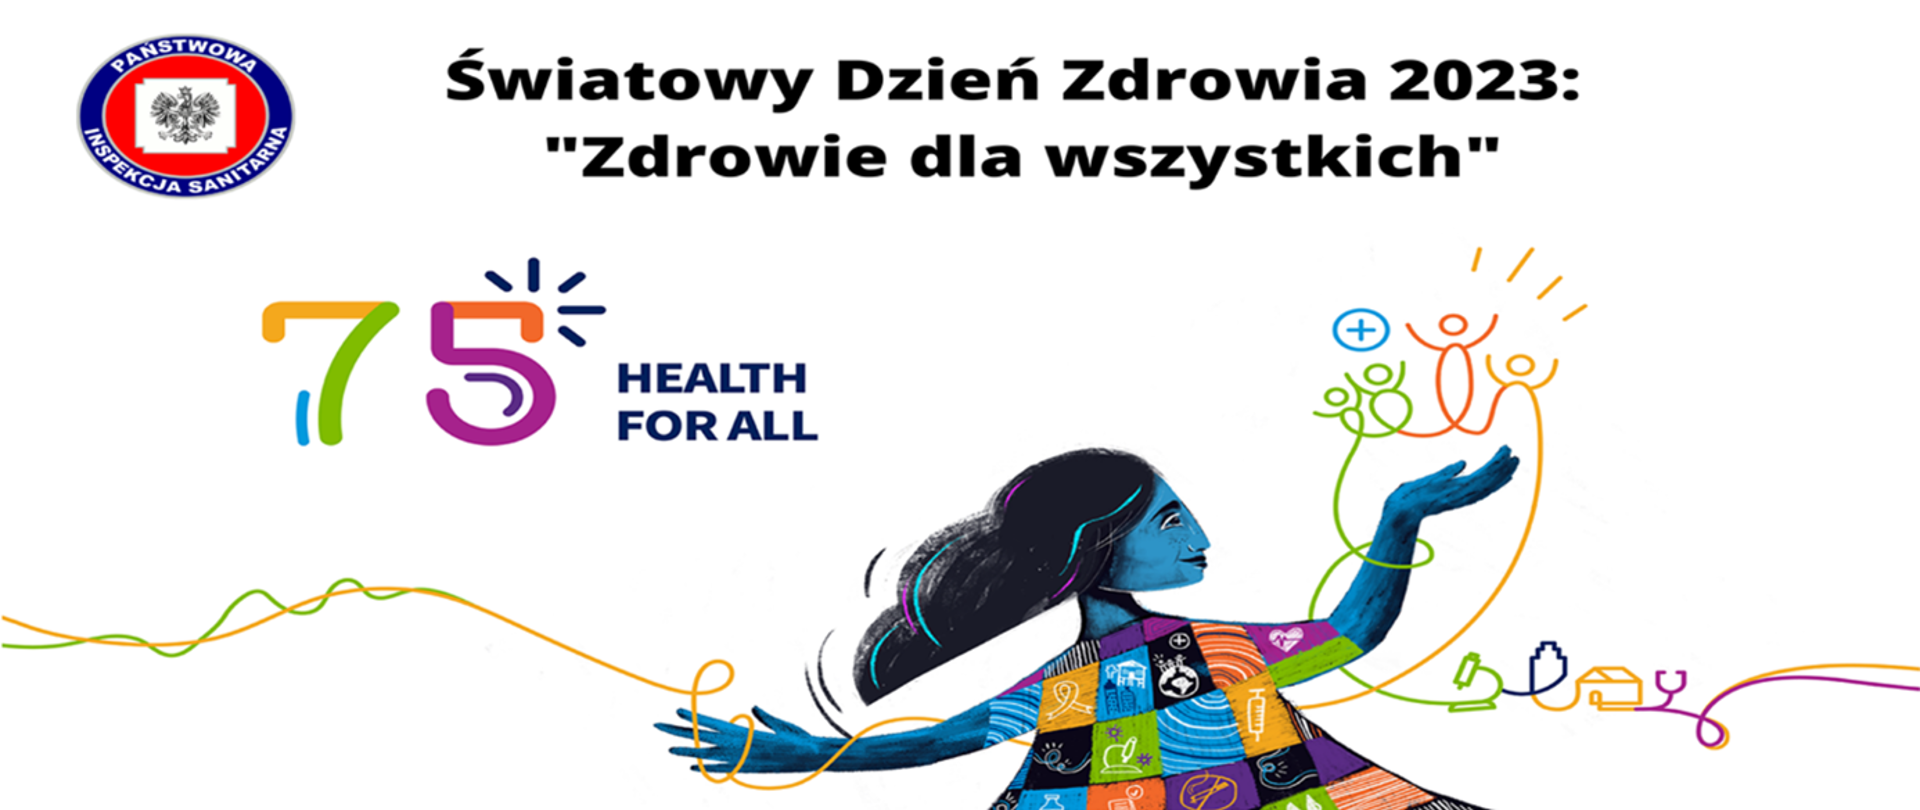 Światowy Dzień Zdrowia 2023: "Zdrowie dla wszystkich" - logo programu. Logotyp Państwowej Inspekcji Sanitarnej